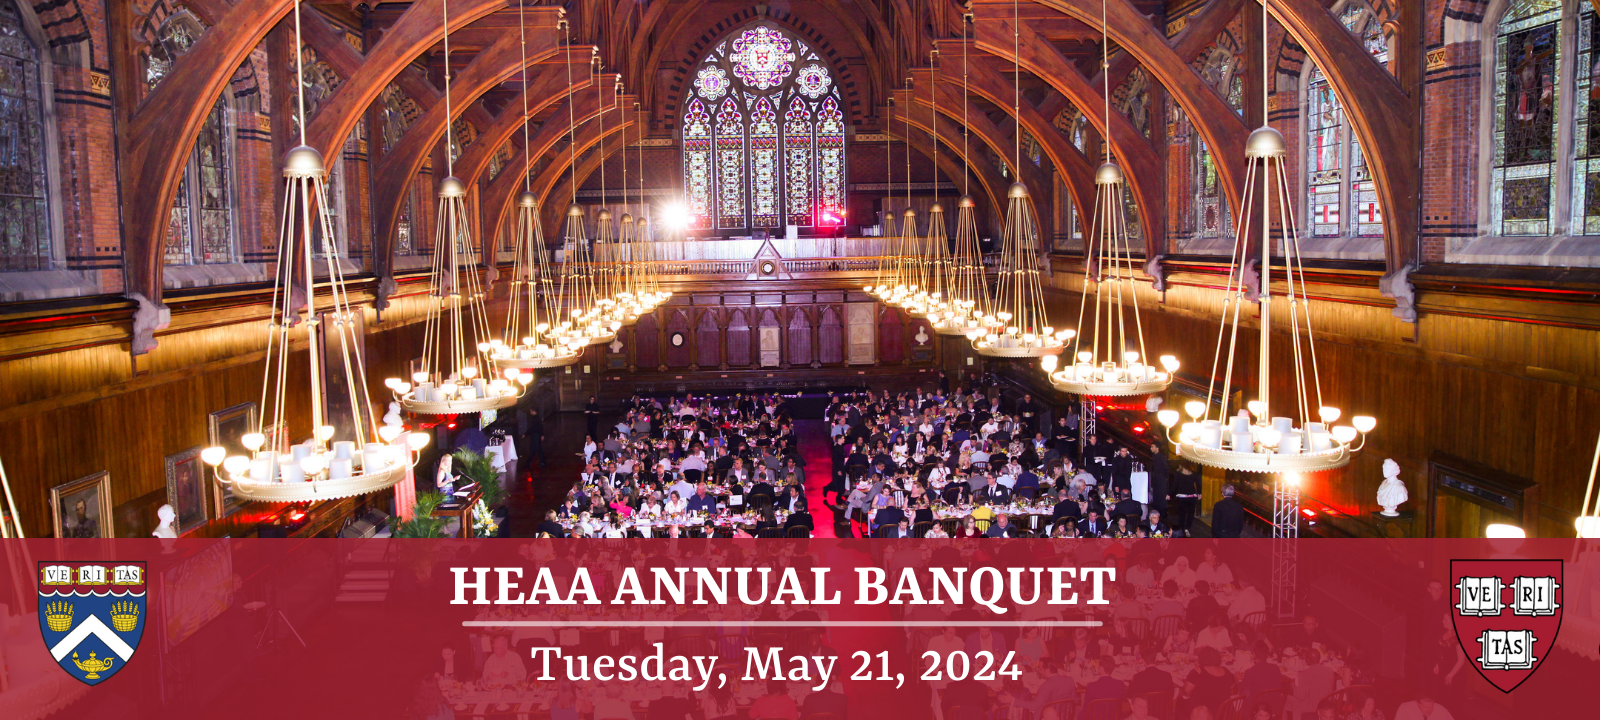 HEAA Annual Banquet 5.21.24